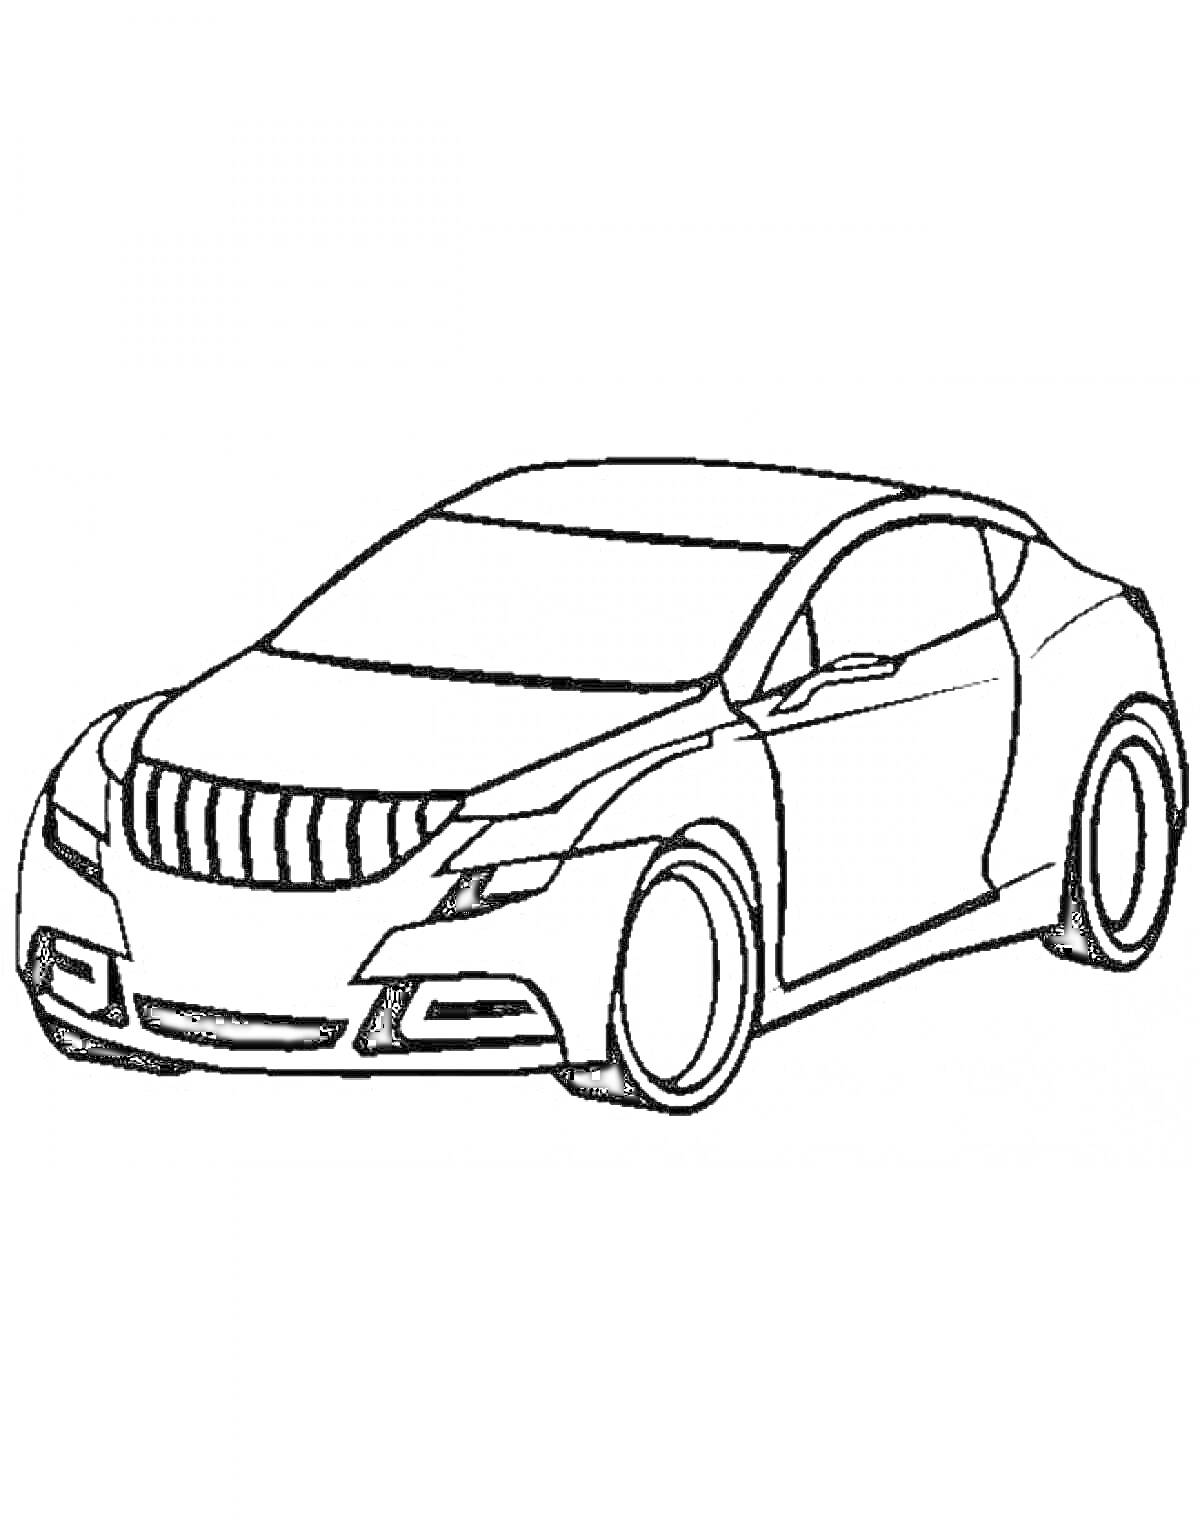 Раскраска Раскраска с изображением спортивного автомобиля